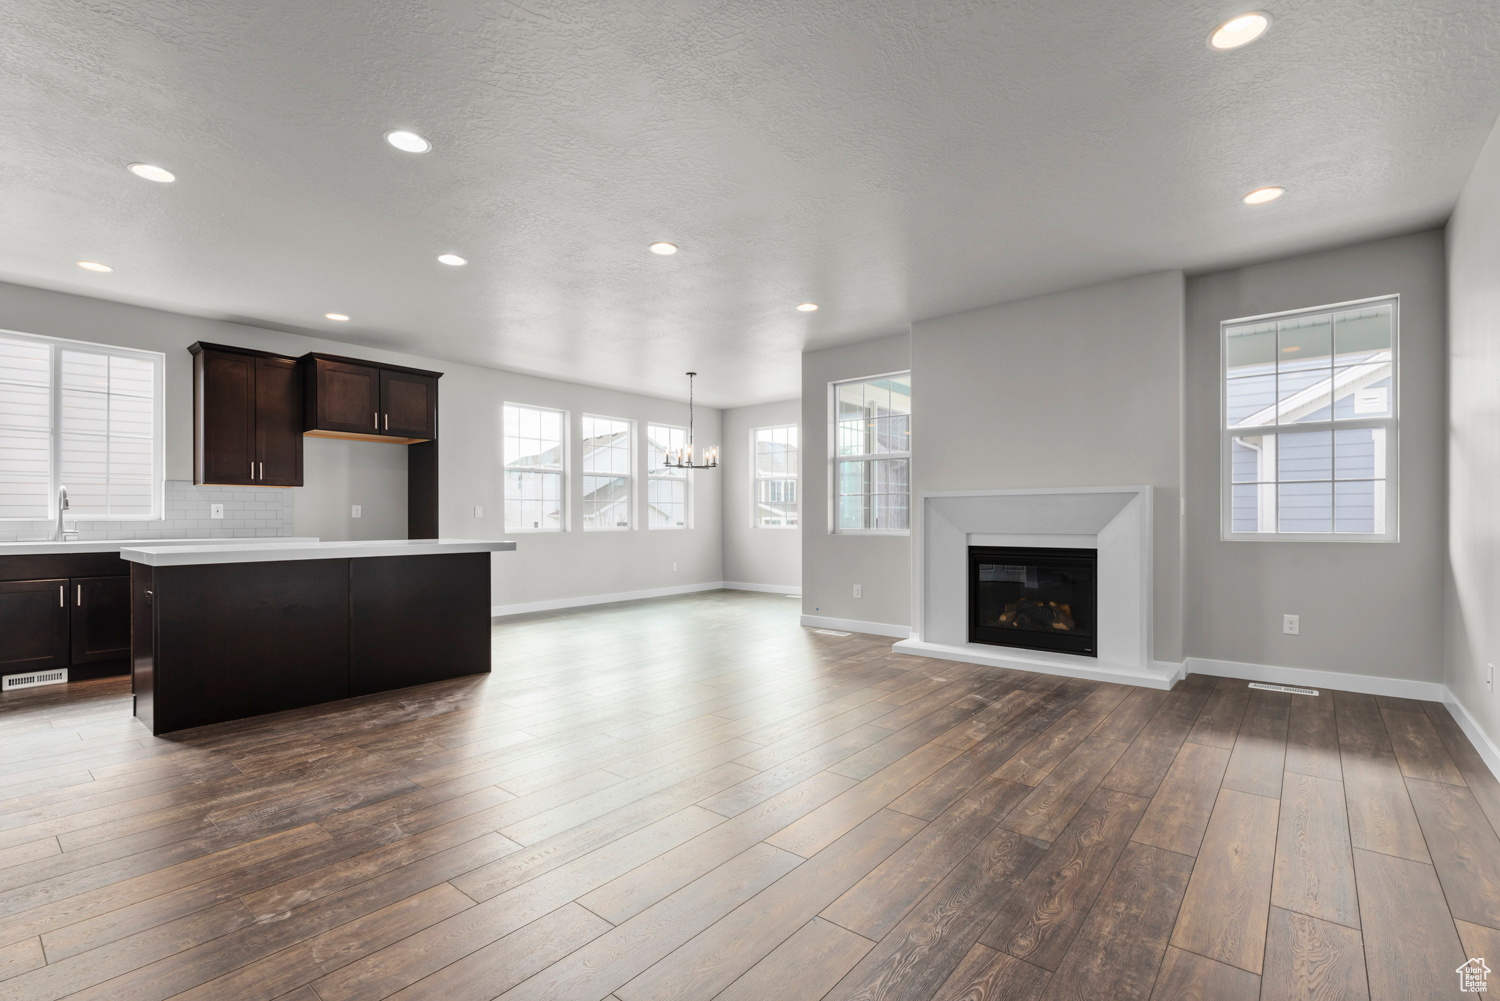 Kitchen featuring dark brown cabinets, tasteful backsplash, hardwood / wood-style flooring, sink, and a center island